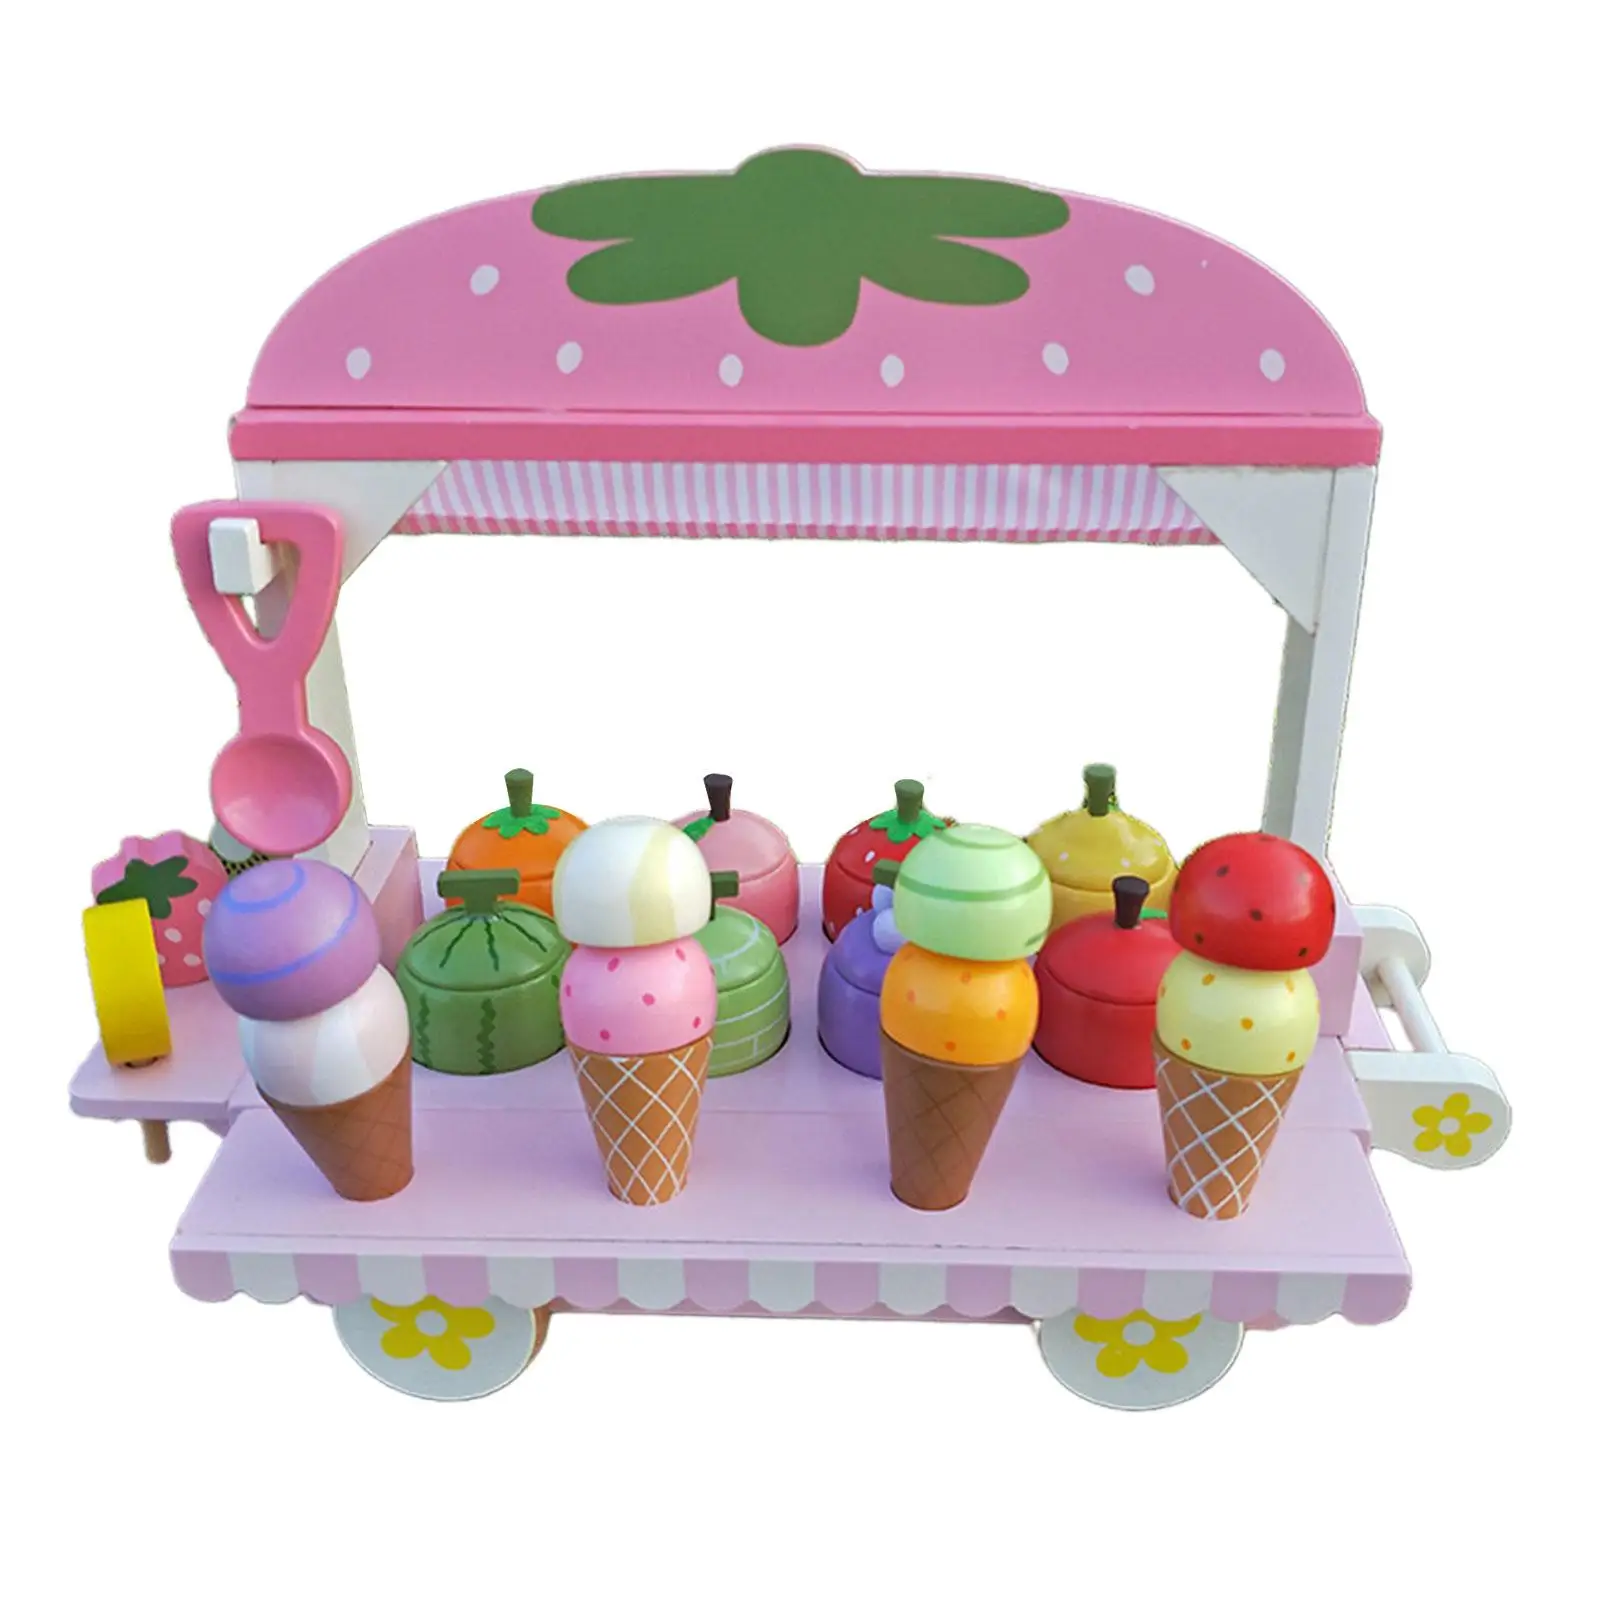 

Деревянная игрушка-тележка для мороженого, игрушечный счетчик для мороженого, имитация мороженого, ролевая игра для детей, подарки на день рождения